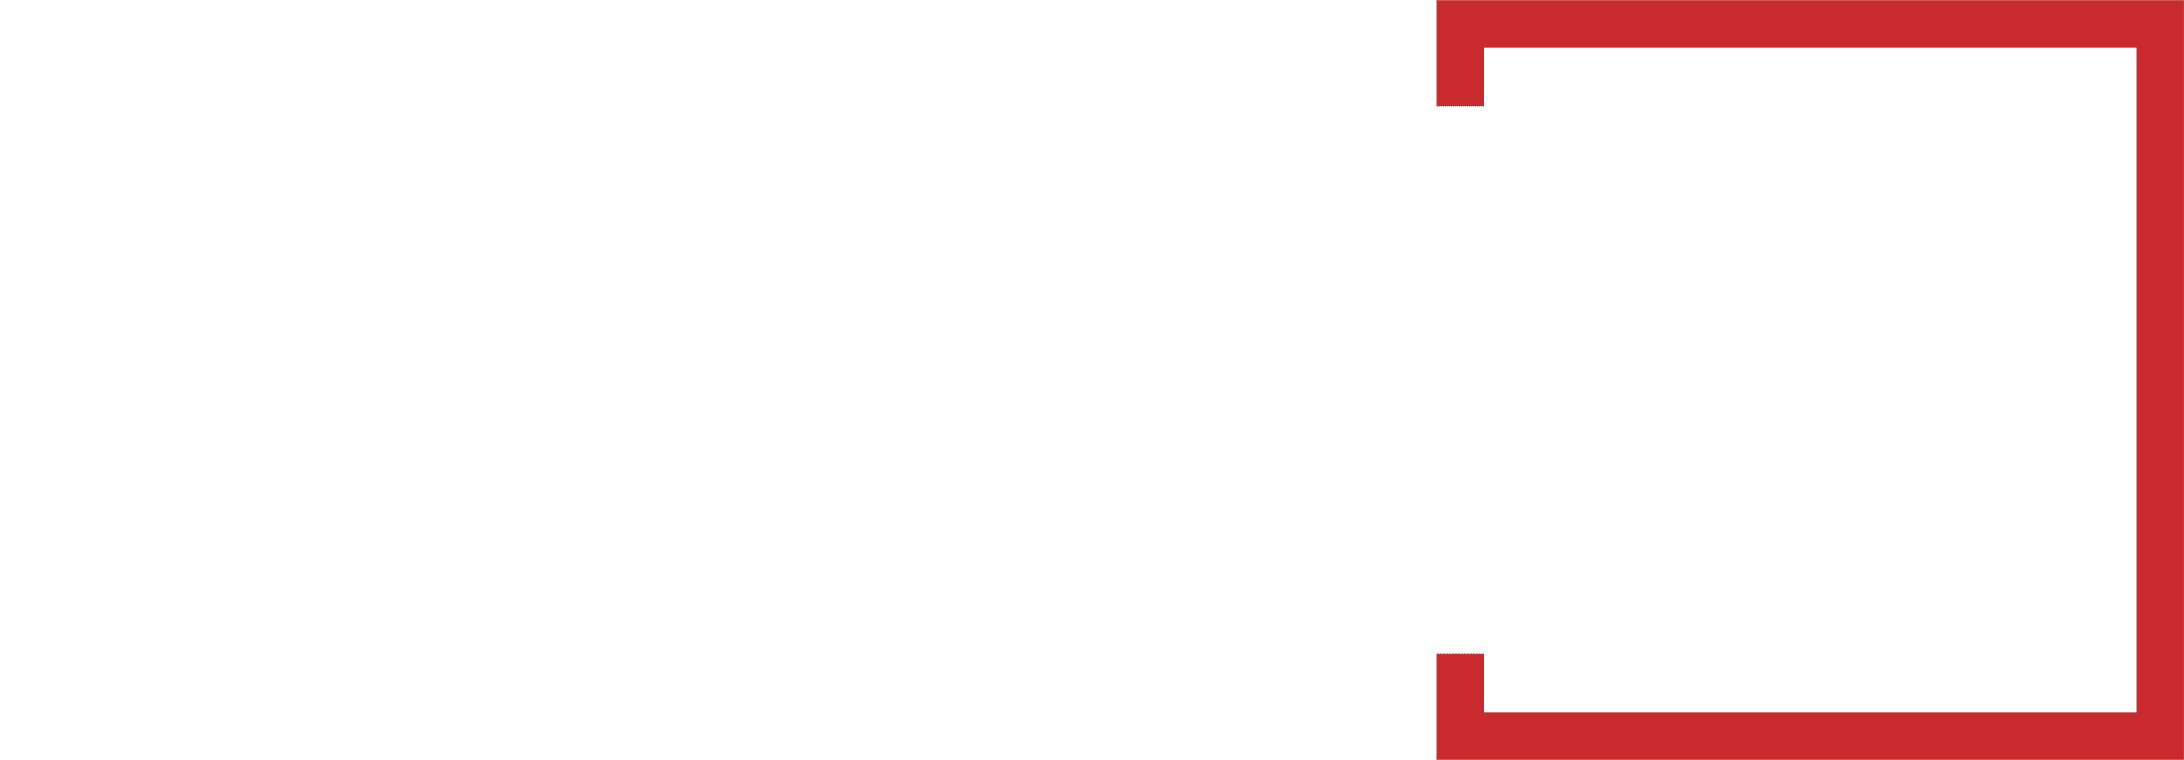 Login Securité logo